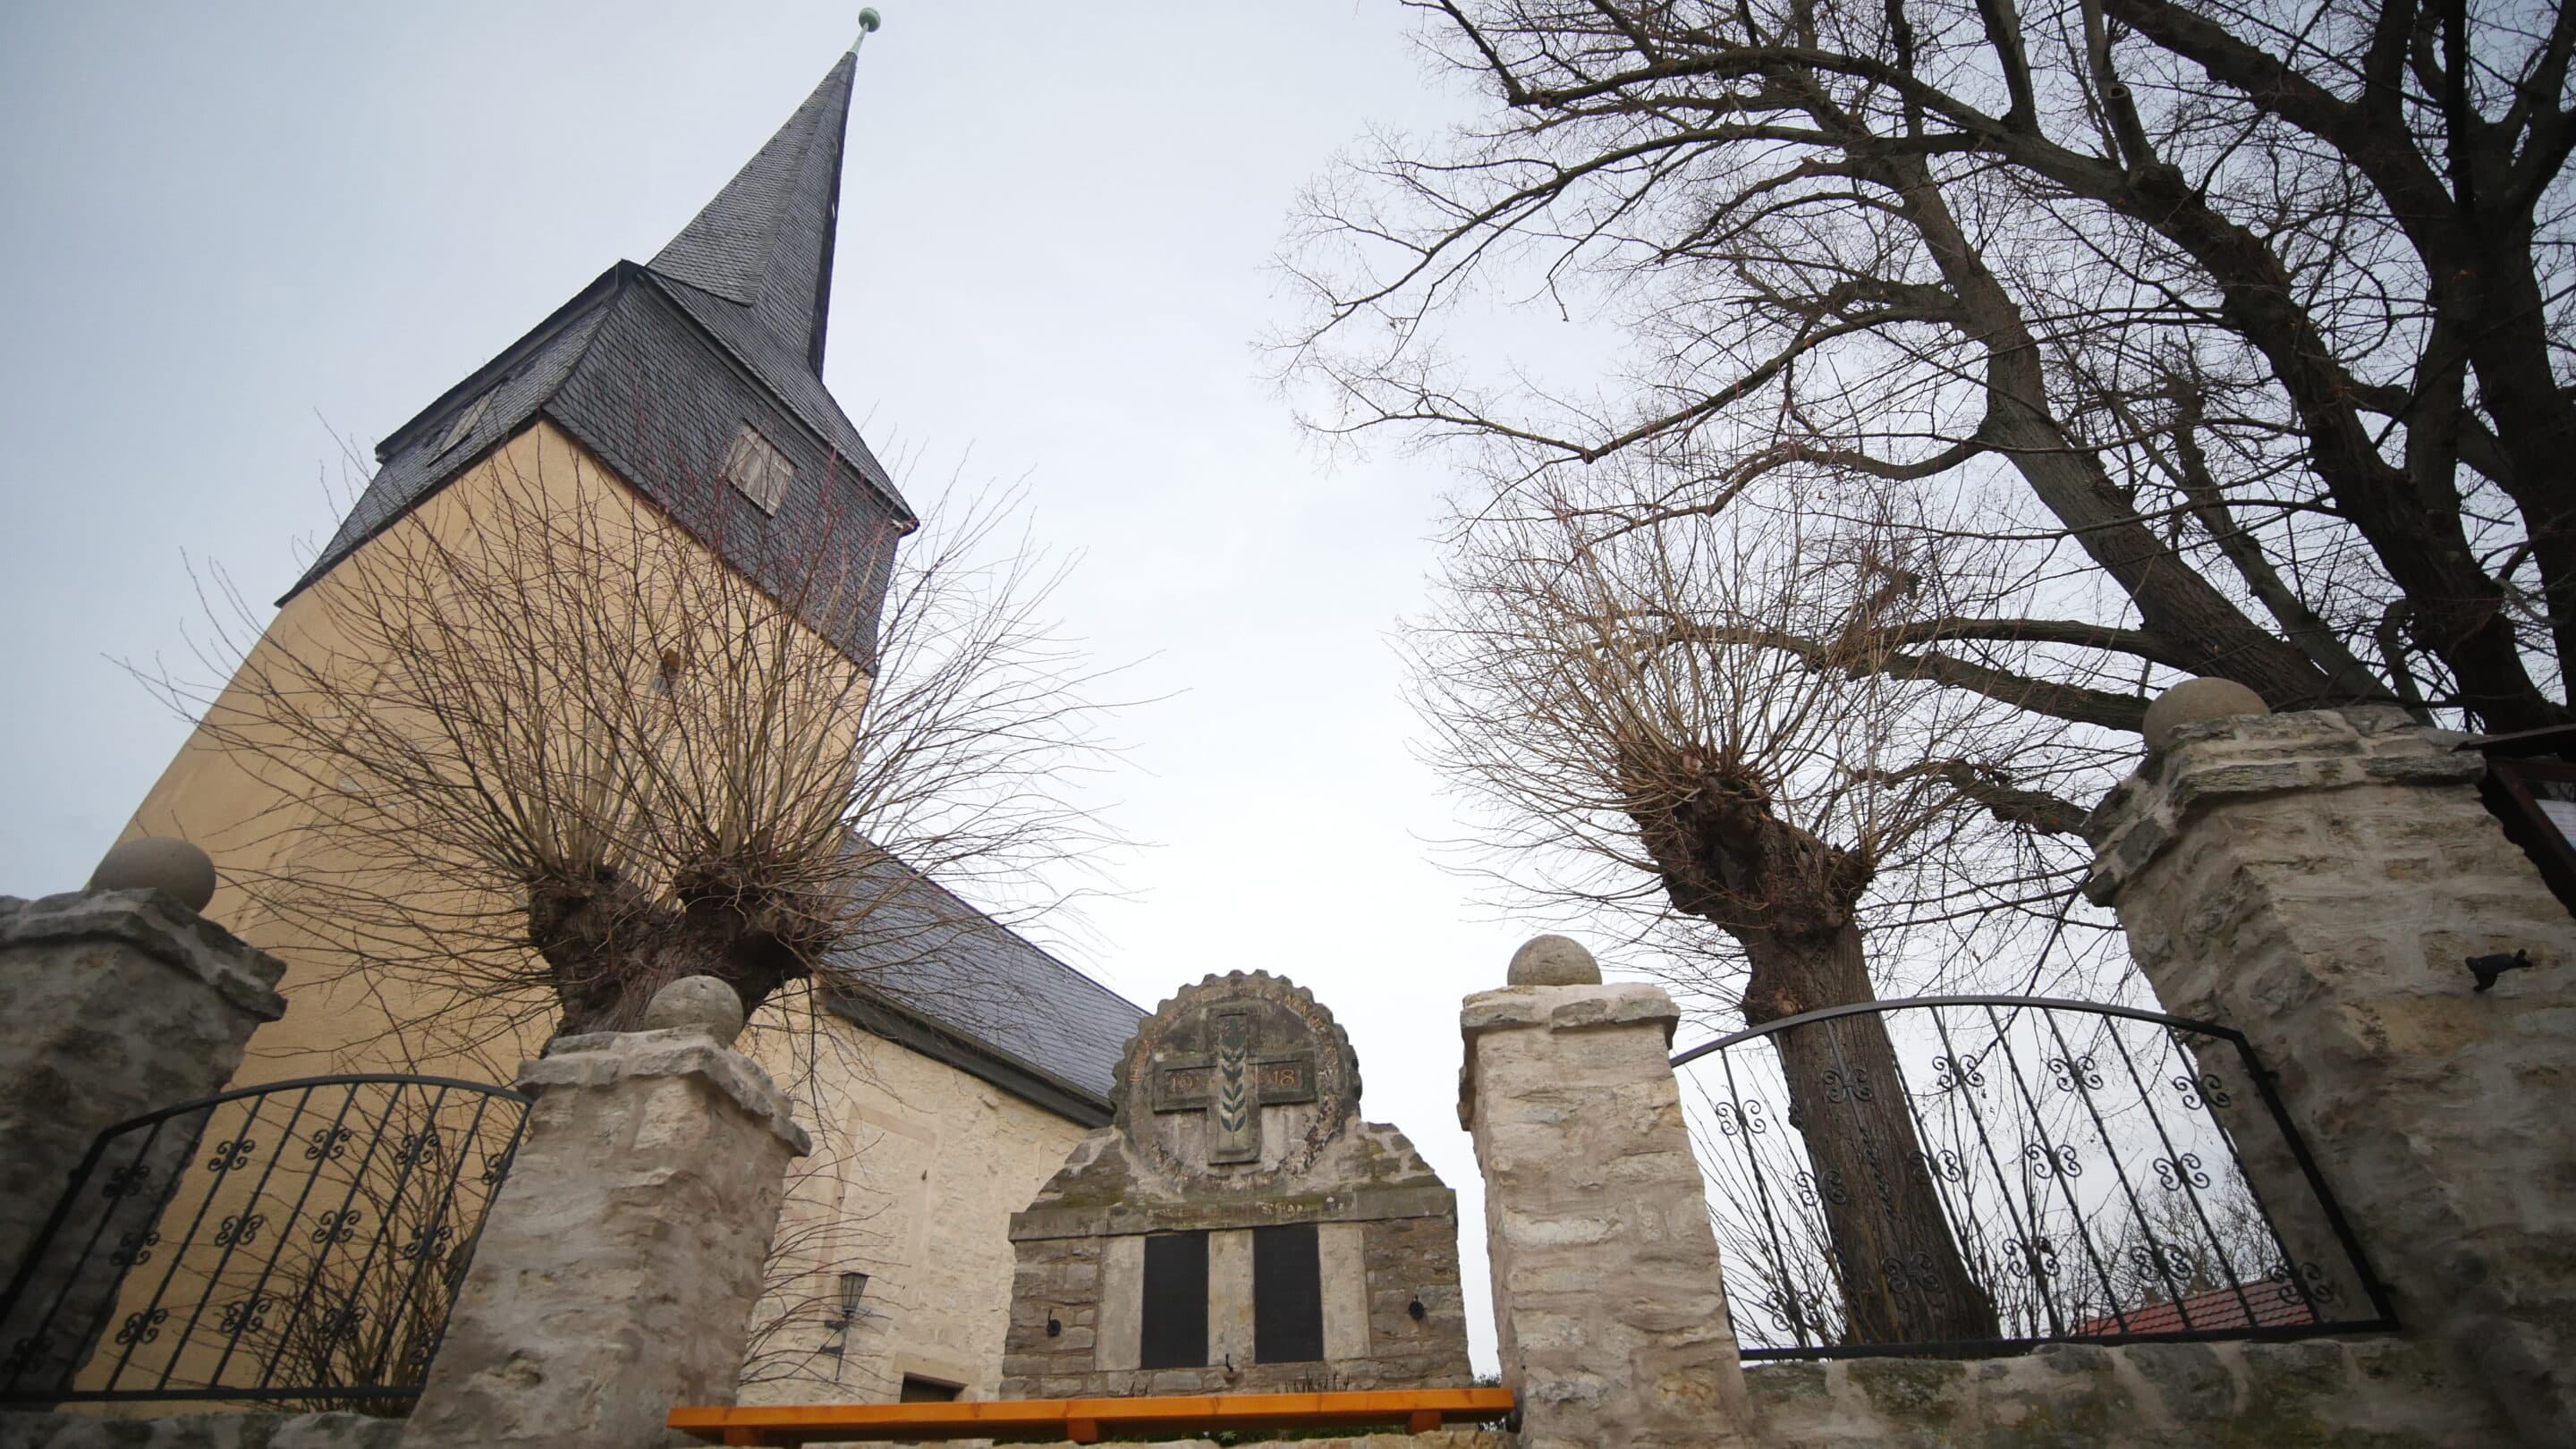 Kirche Unser lieben Frauen in LInderbach Erfurt mit Kriegerdenkmal.